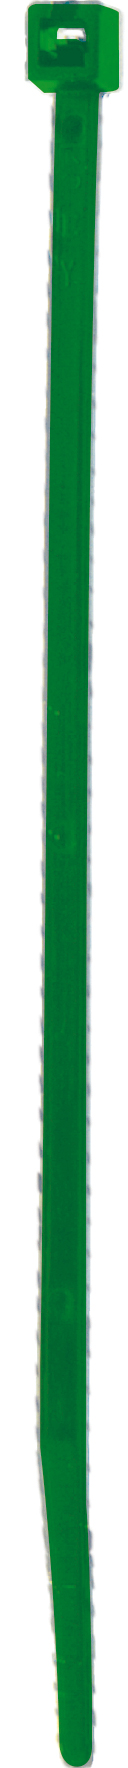 Cod. 36300Z483000C - FS Fascetta per cablaggio in nylon - Verde